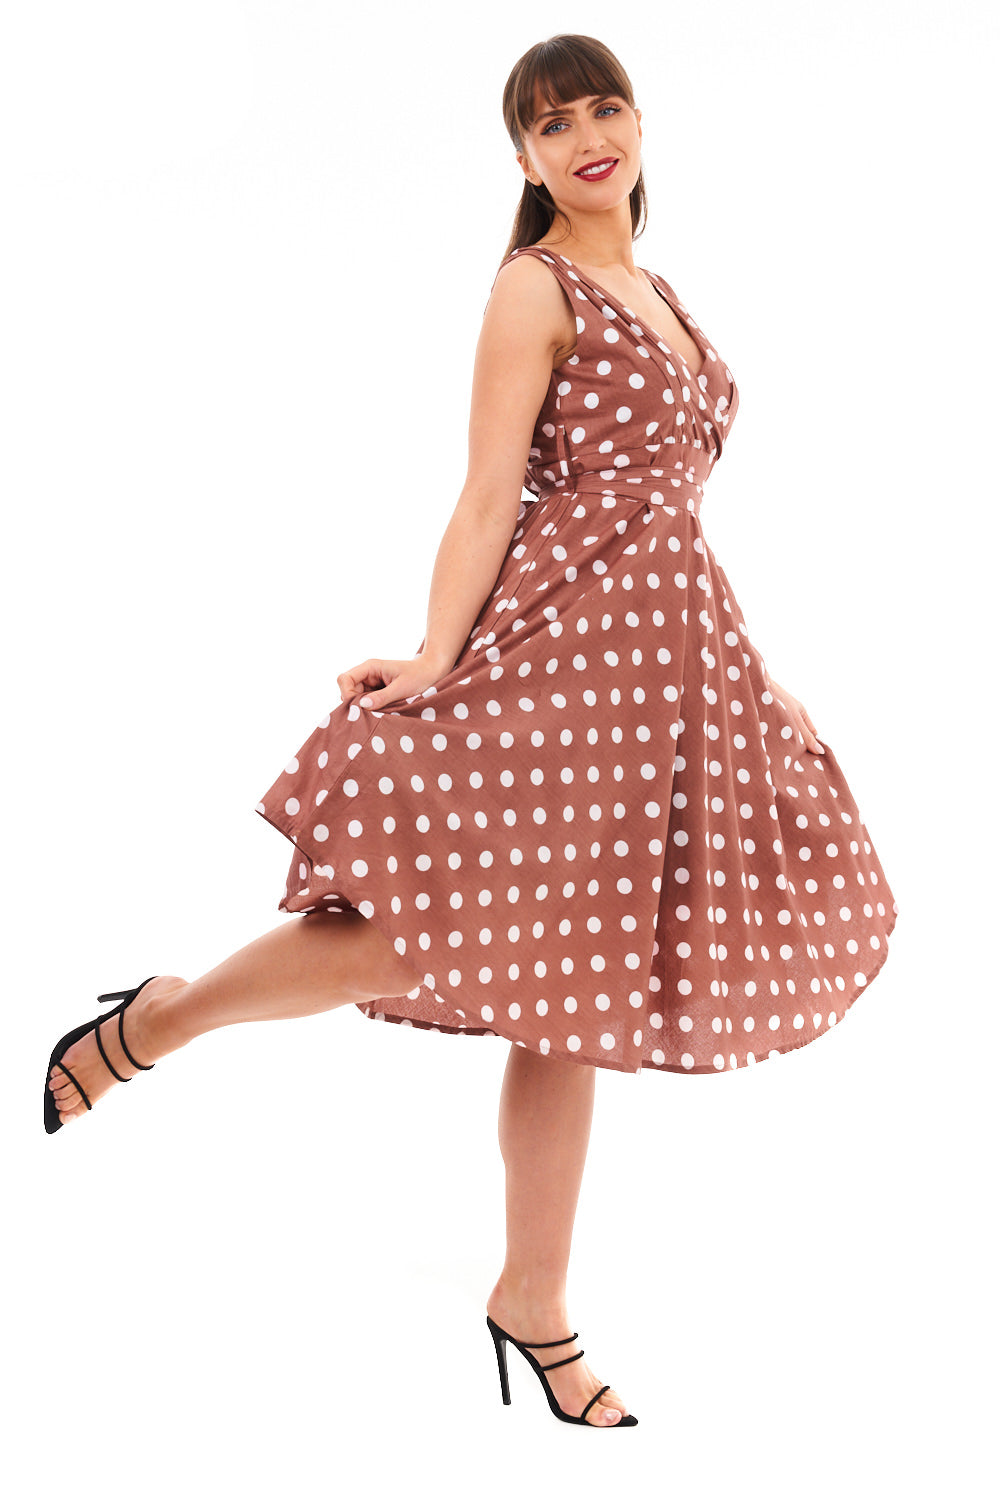 Ladies Retro Vintage 1950's Rockabilly Swing Polka Dot Dress in Beige